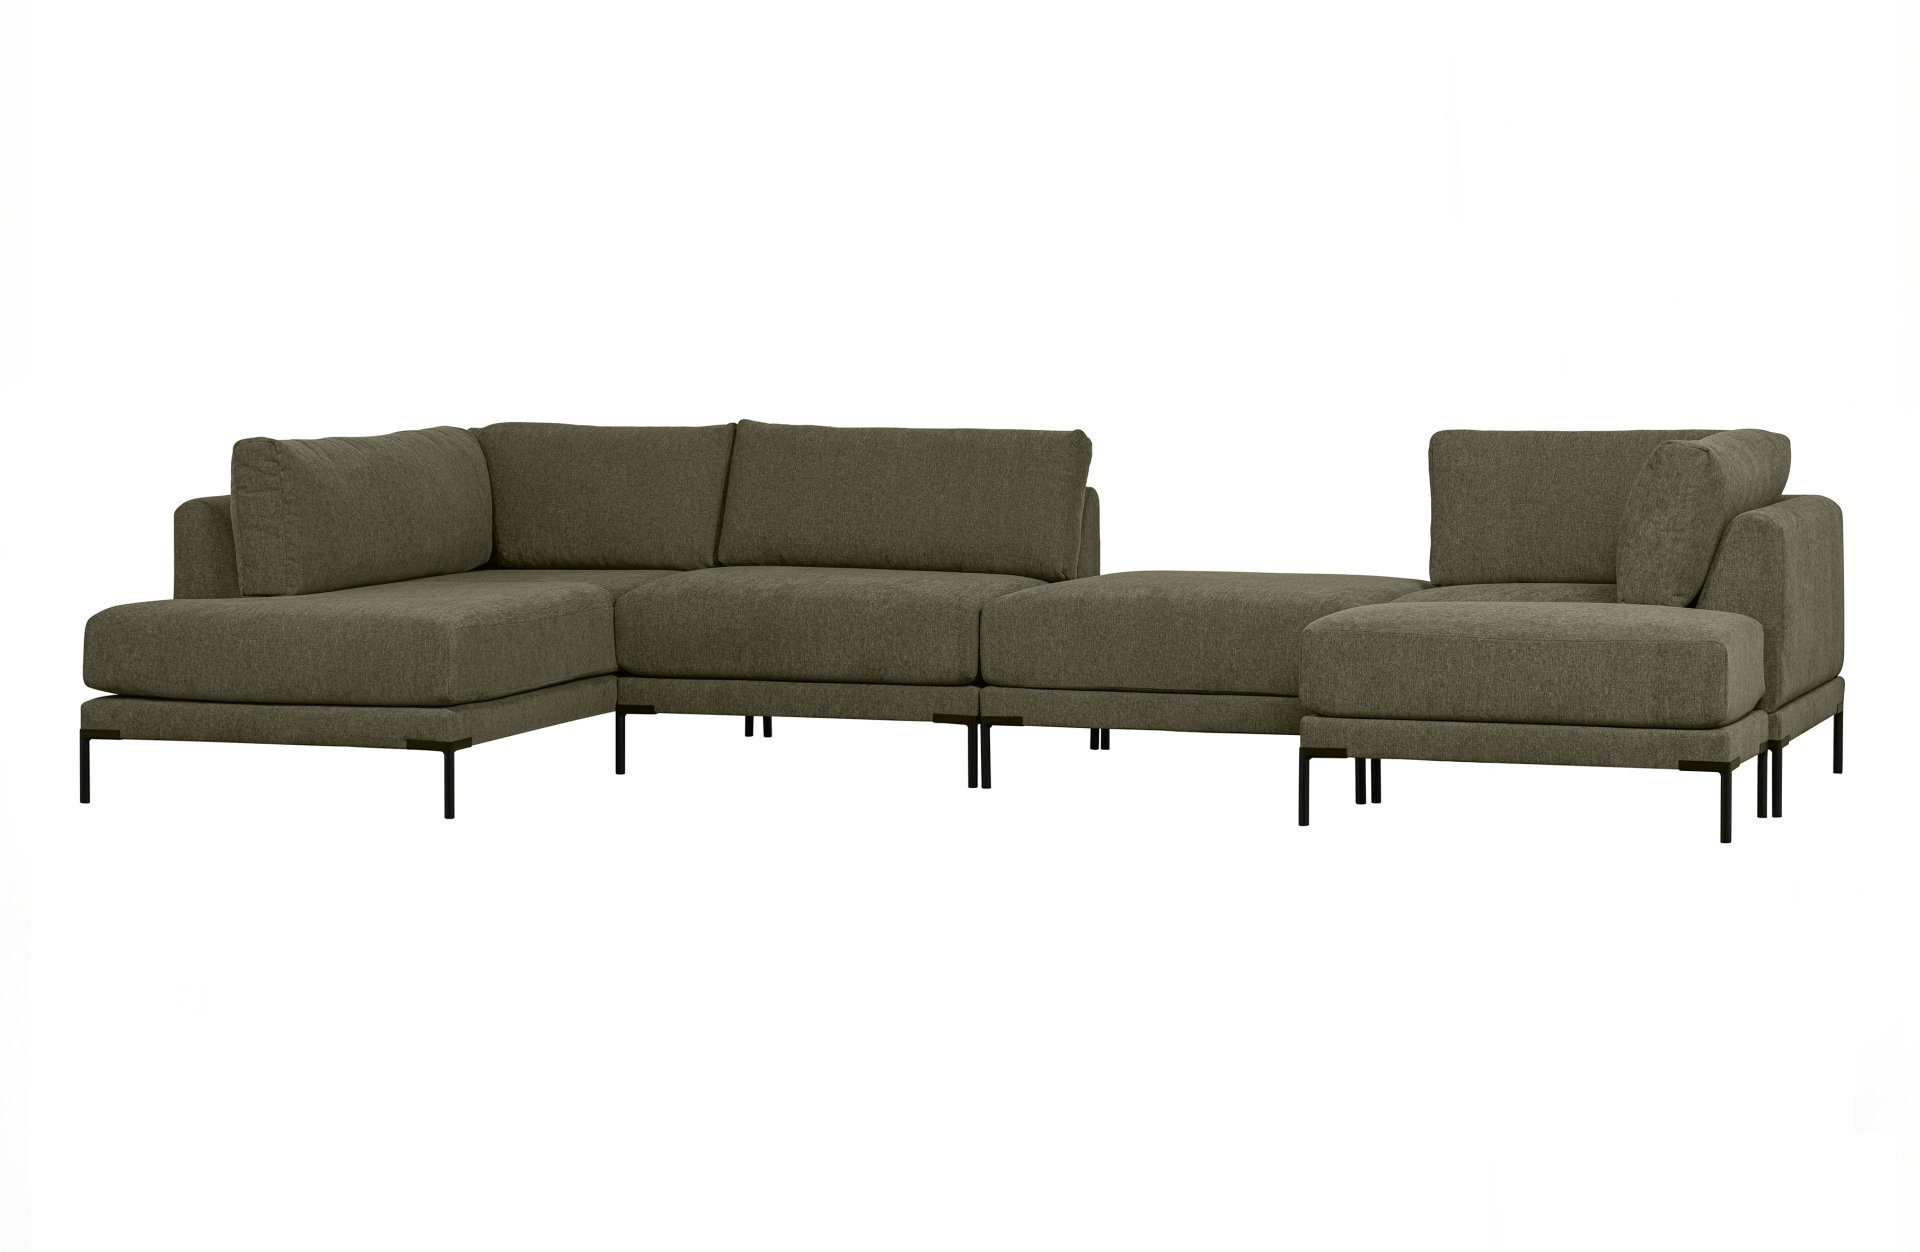 Das Modulsofa Couple Lounge überzeugt mit seinem modernen Design. Das Lounge Element mit der Ausführung Links wurde aus Melange Stoff gefertigt, welcher einen einen grünen Farbton besitzen. Das Gestell ist aus Metall und hat eine schwarze Farbe. Das Eleme